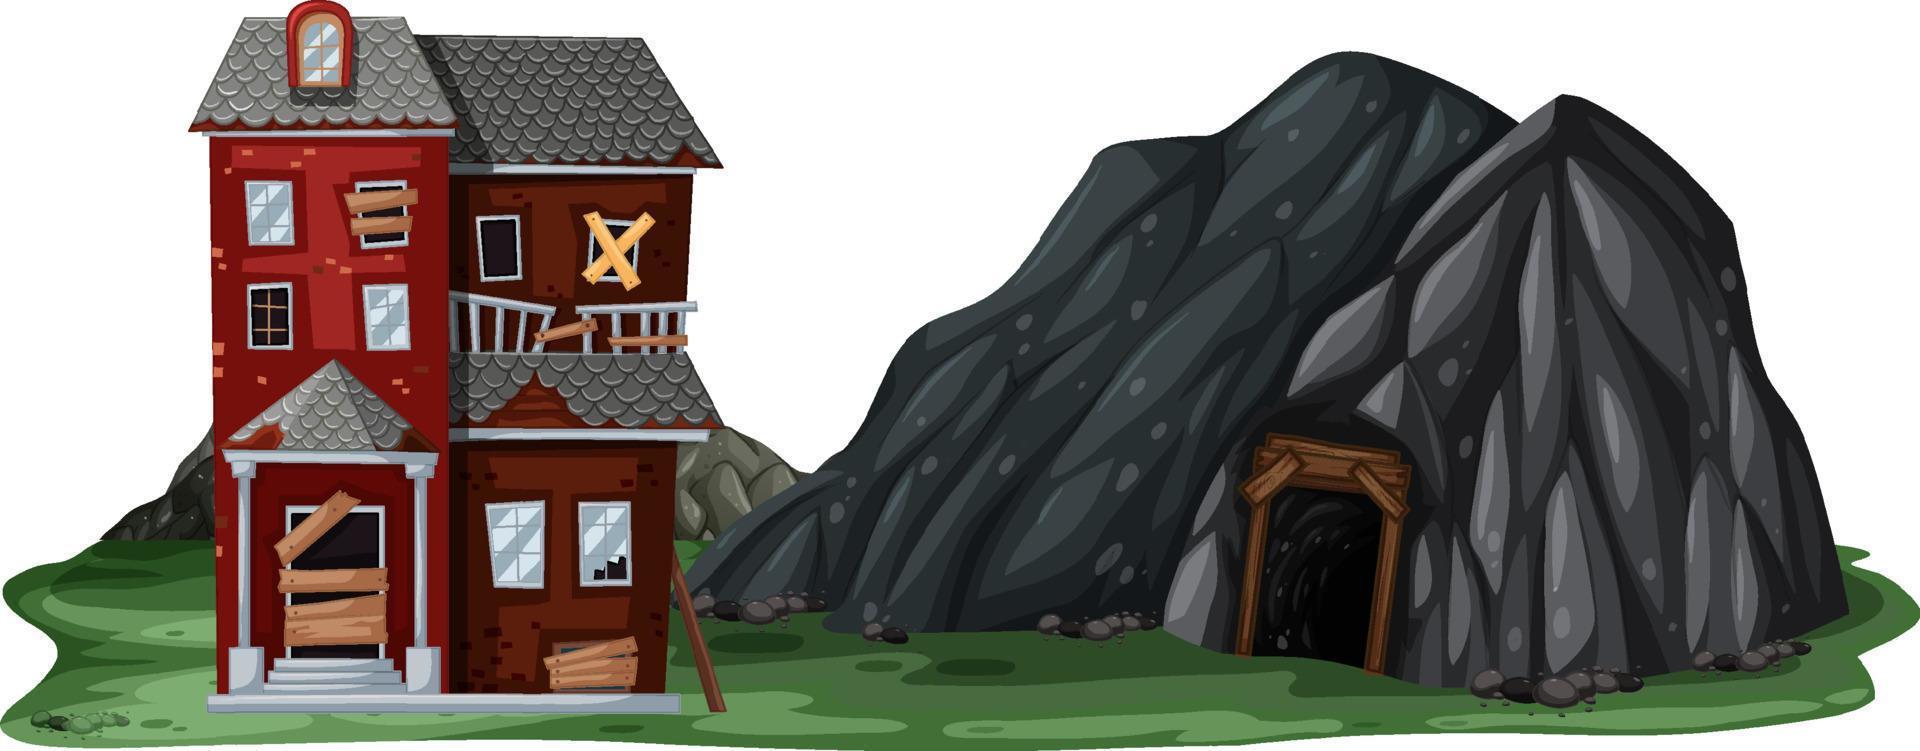 una casa abbandonata con una grotta di roccia su sfondo bianco vettore